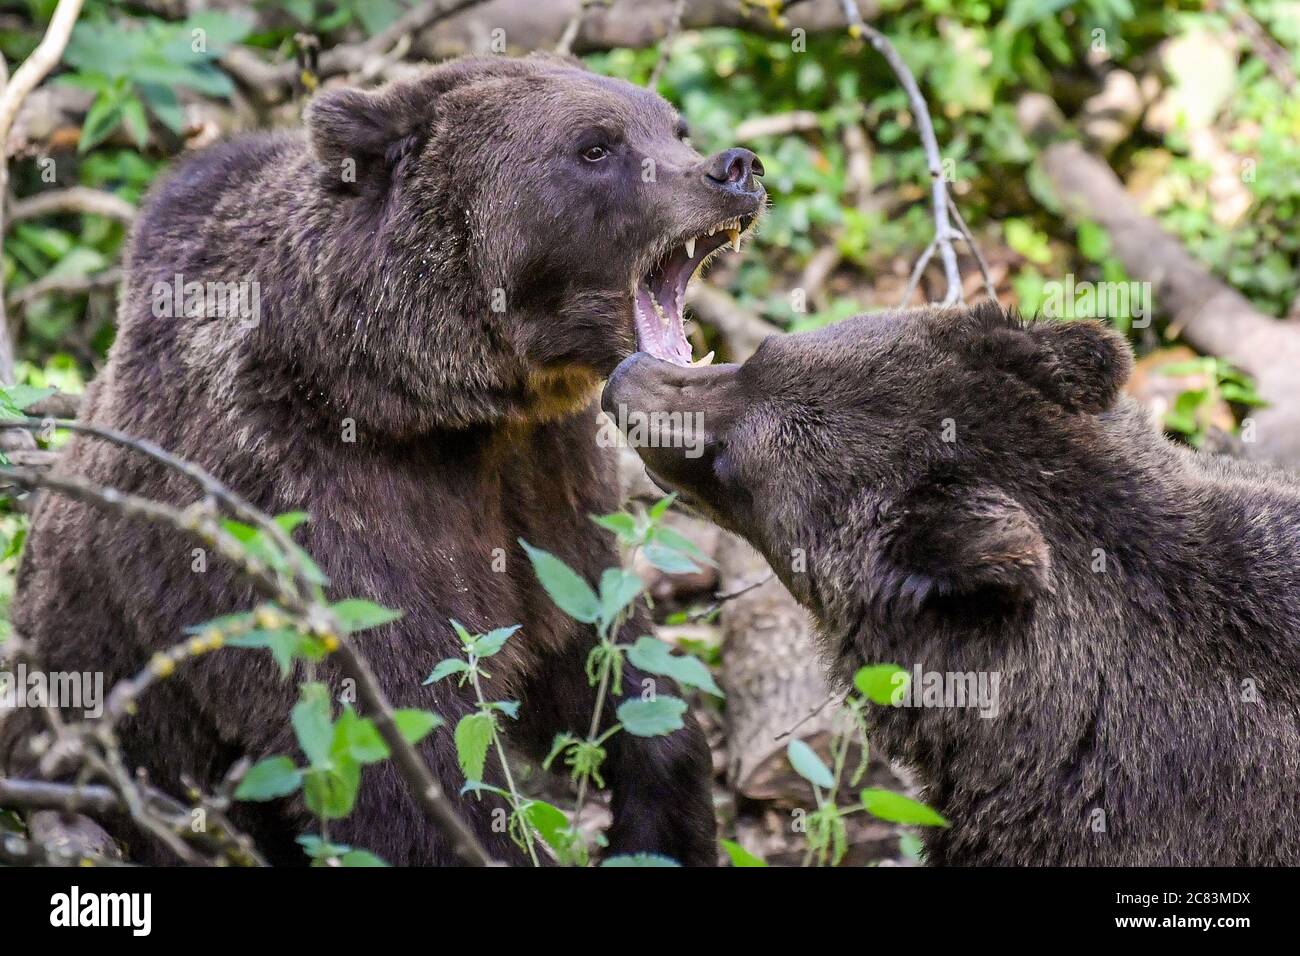 Europäische Braunbären zeigen territoriales Verhalten, während sie im Wild Place Project in Bristol nach Larven suchen, um den 1. Jahrestag der Eröffnung von Bear Wood zu feiern, der größten Braunbären-Ausstellung Großbritanniens, in der sie neben Wölfen, Luchsen und Vielfraß leben. Wie sie es vor Tausenden von Jahren getan hätten. Stockfoto